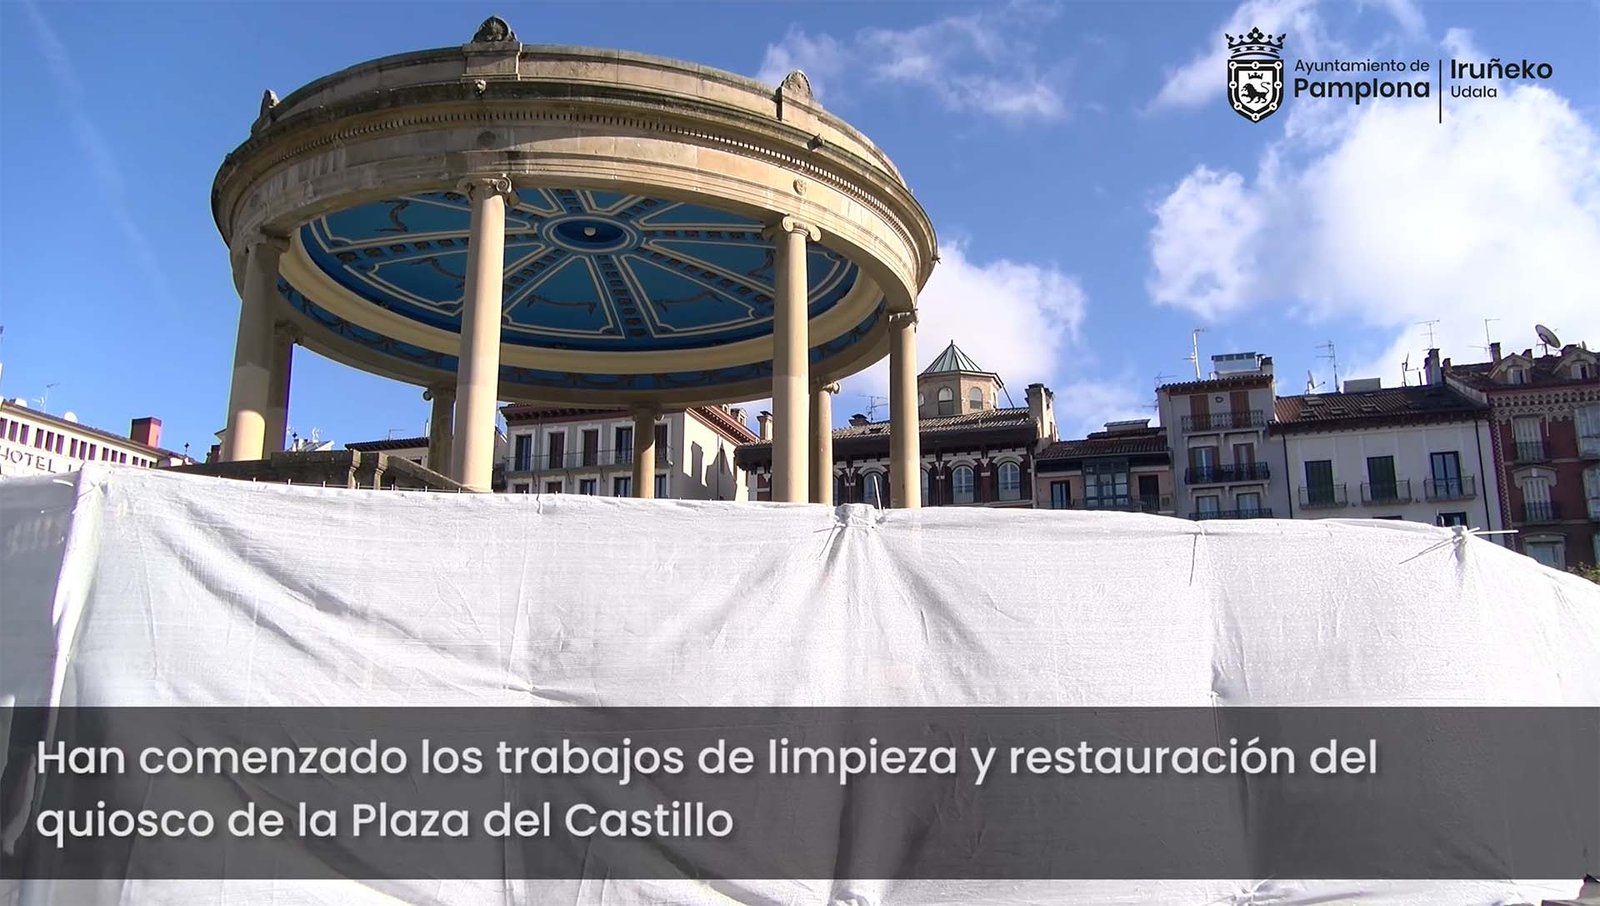 Comienzan los trabajos de limpieza y restauración del quiosco de la Plaza del Castillo, que se desarrollarán durante las próximas tres semanas